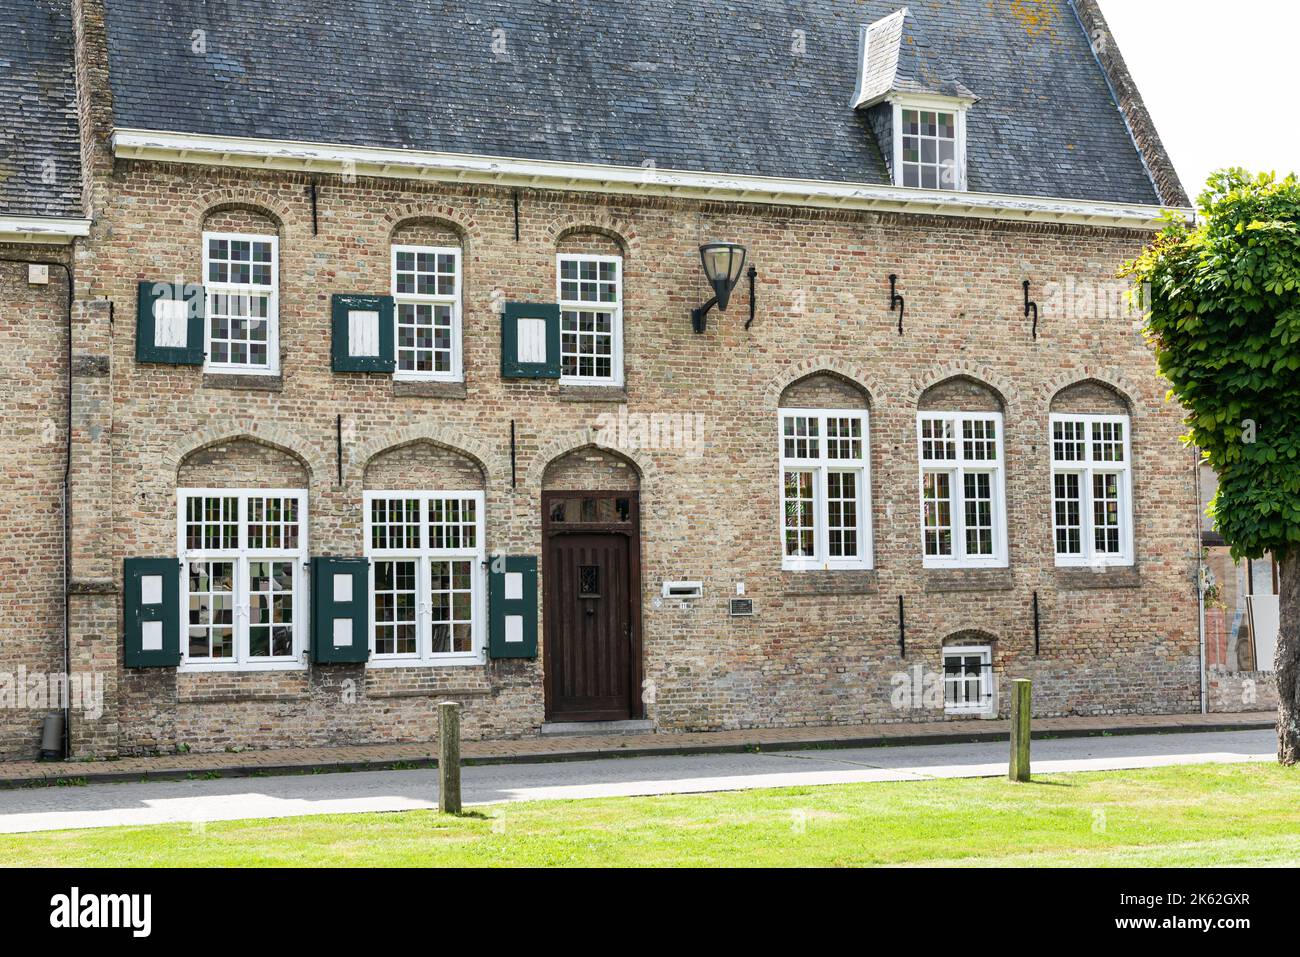 LO-rening, région de Flandre Occidentale - Belgique - 07 17 2021 maisons traditionnelles dans le village de la campagne flamande Banque D'Images